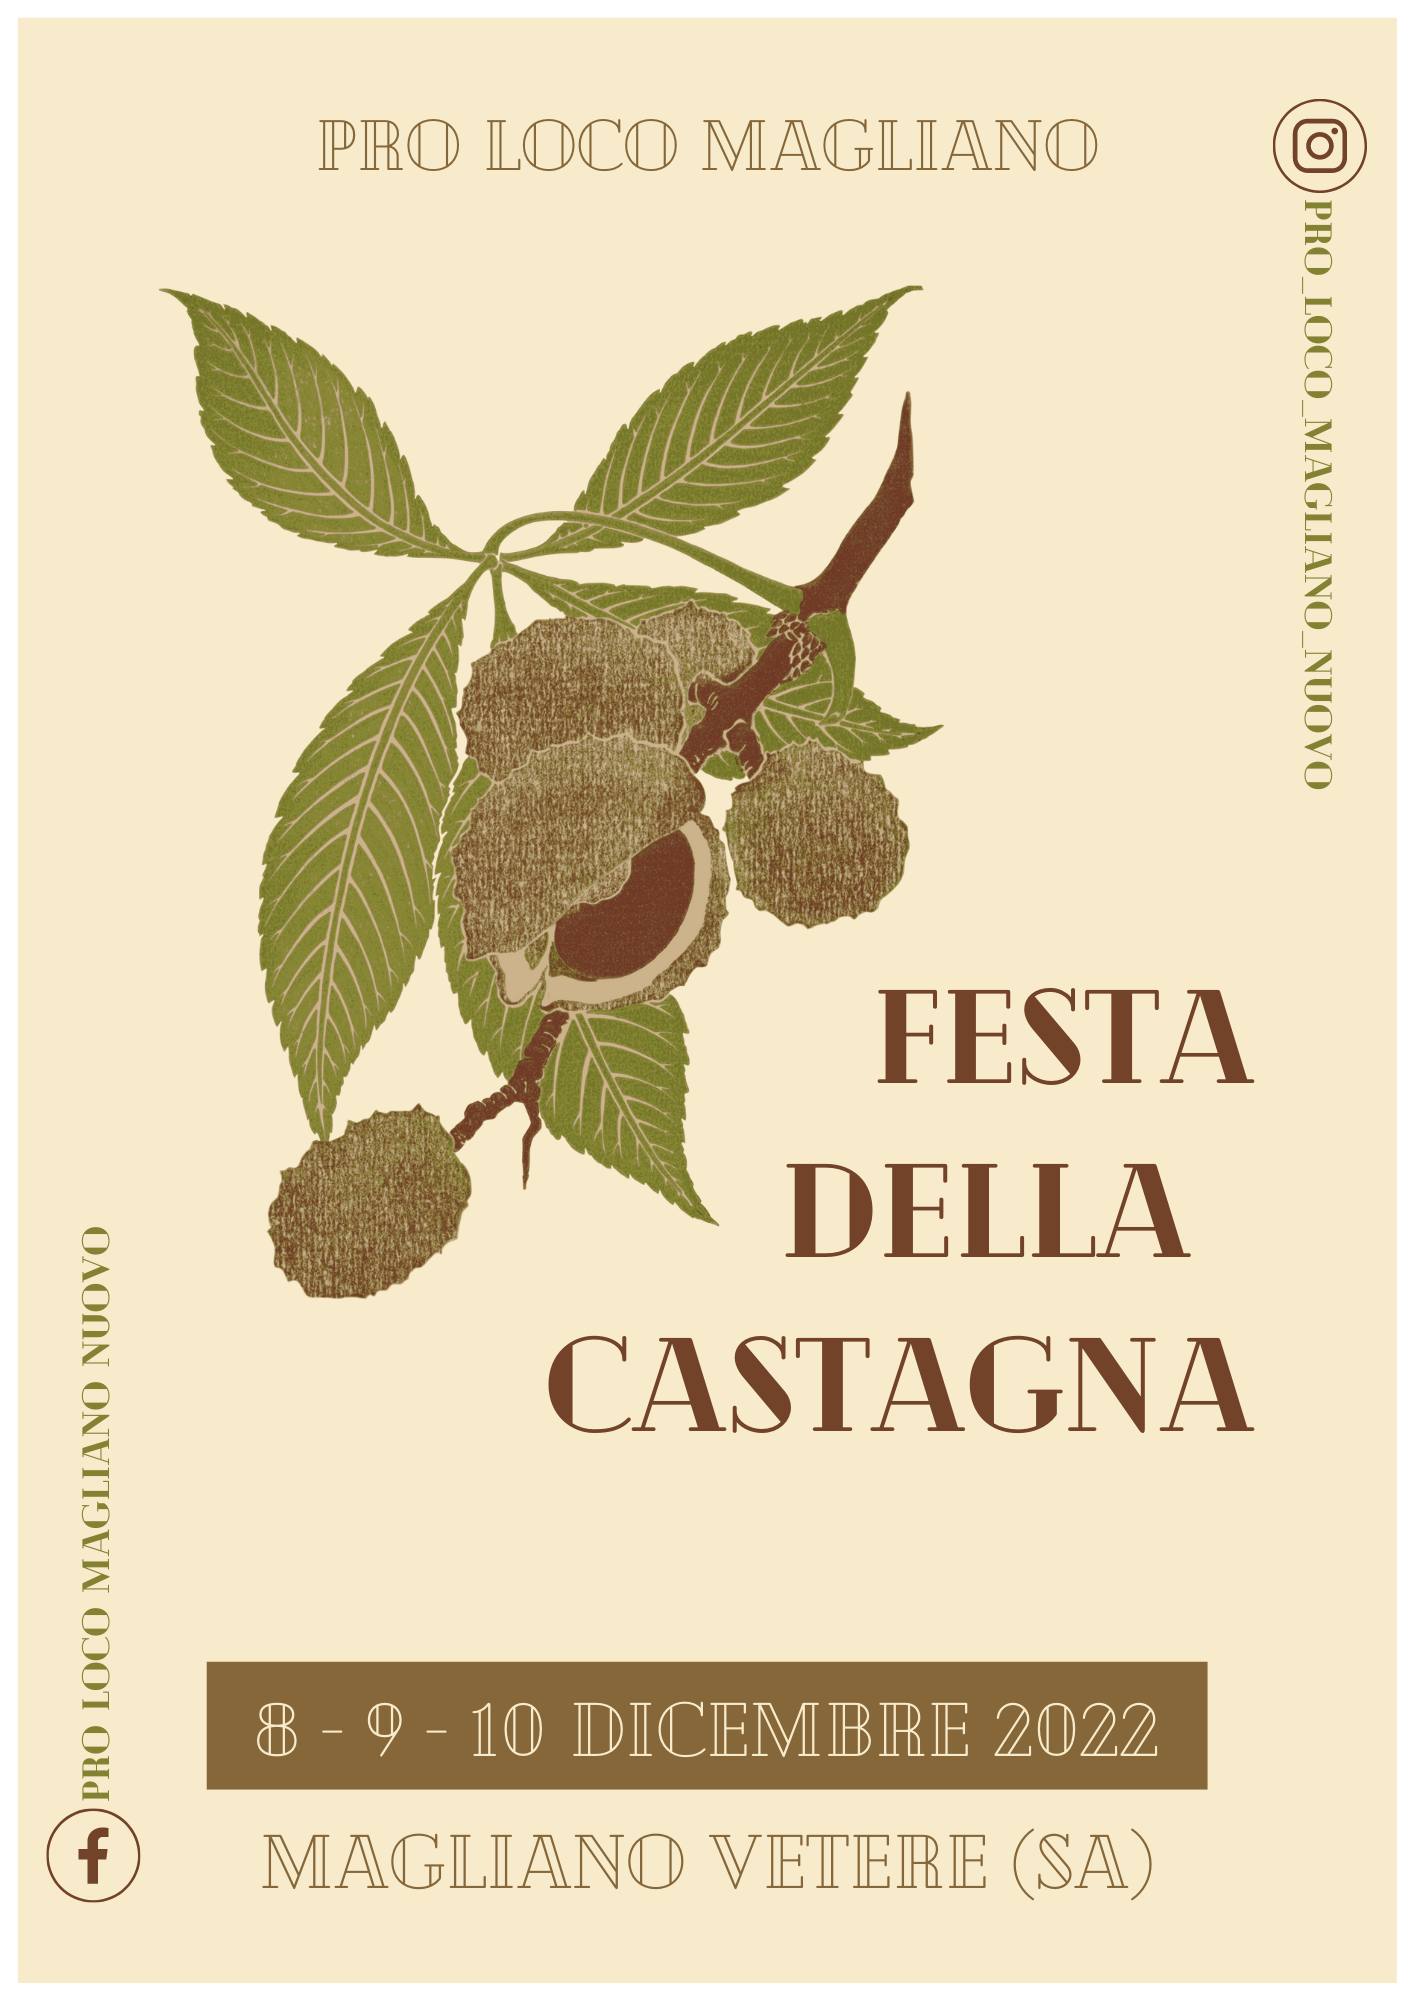 Festa-Castagna-2022-Magliano-Vetere-Cilento-programma